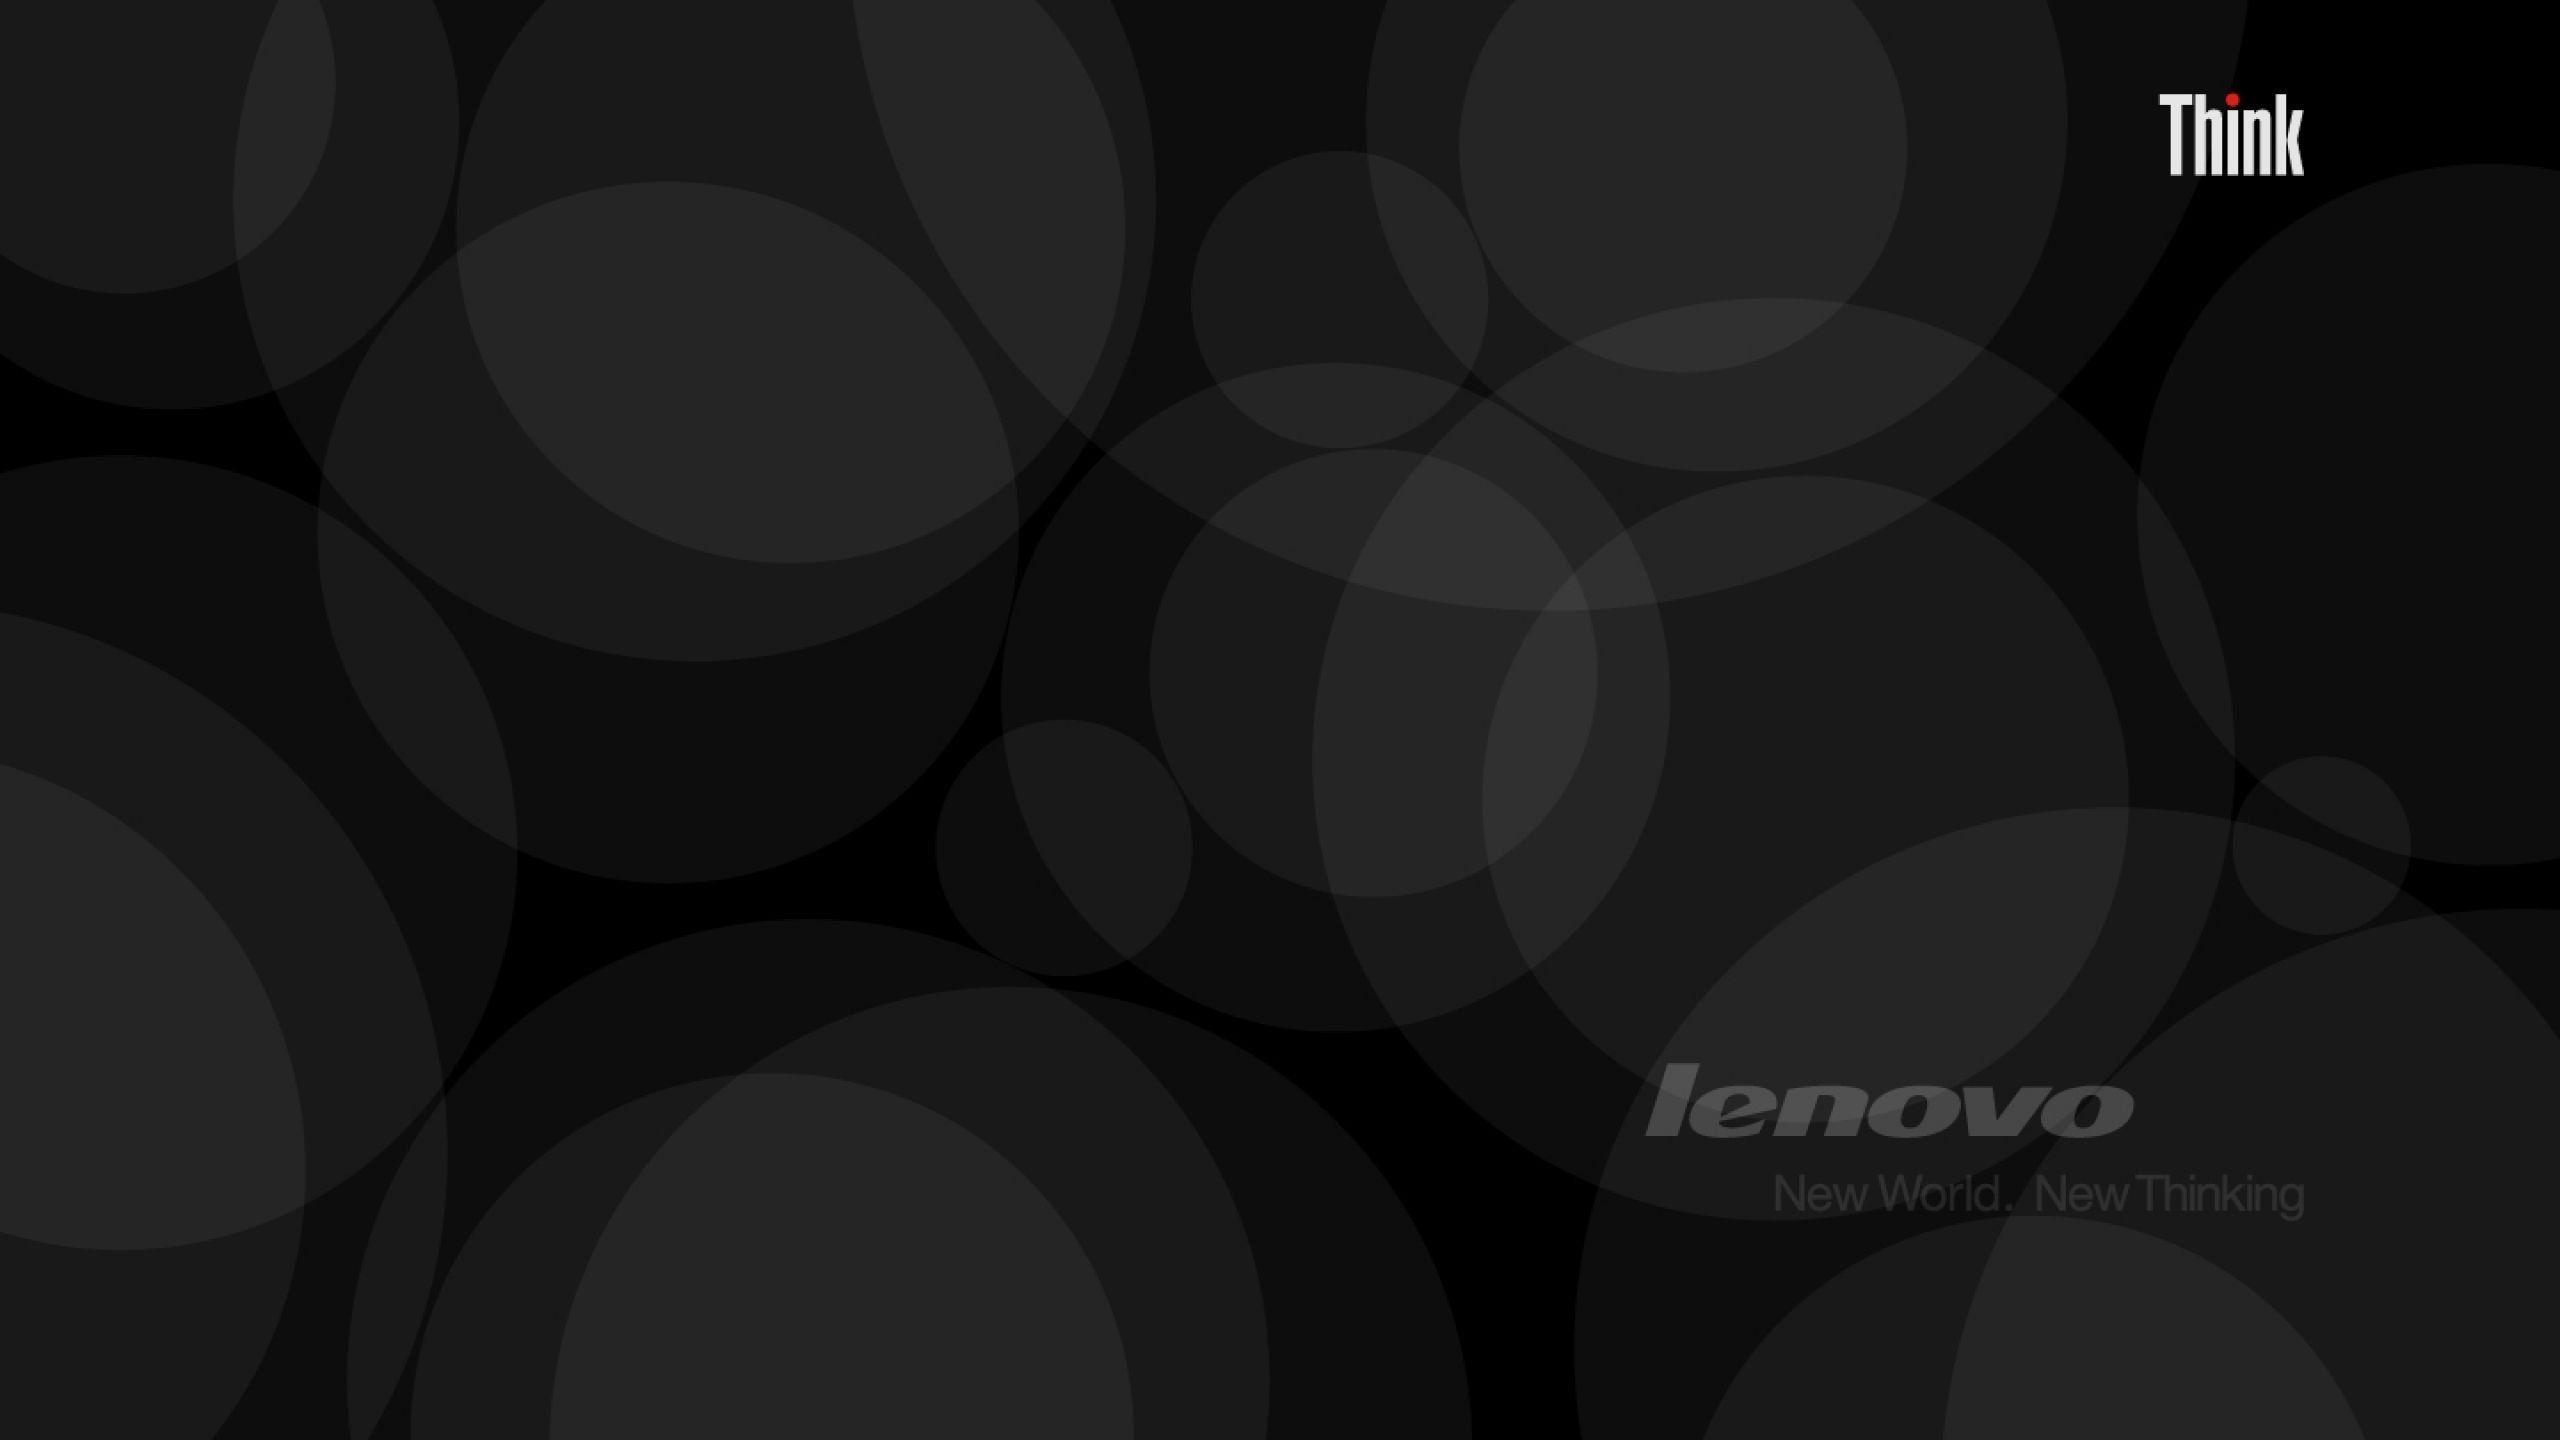 2560x1440 Hình nền Lenovo Thinkpad đẹp.  Hình nền Lenovo, Hình nền điện thoại màu đen, Hình nền HD cho điện thoại di động